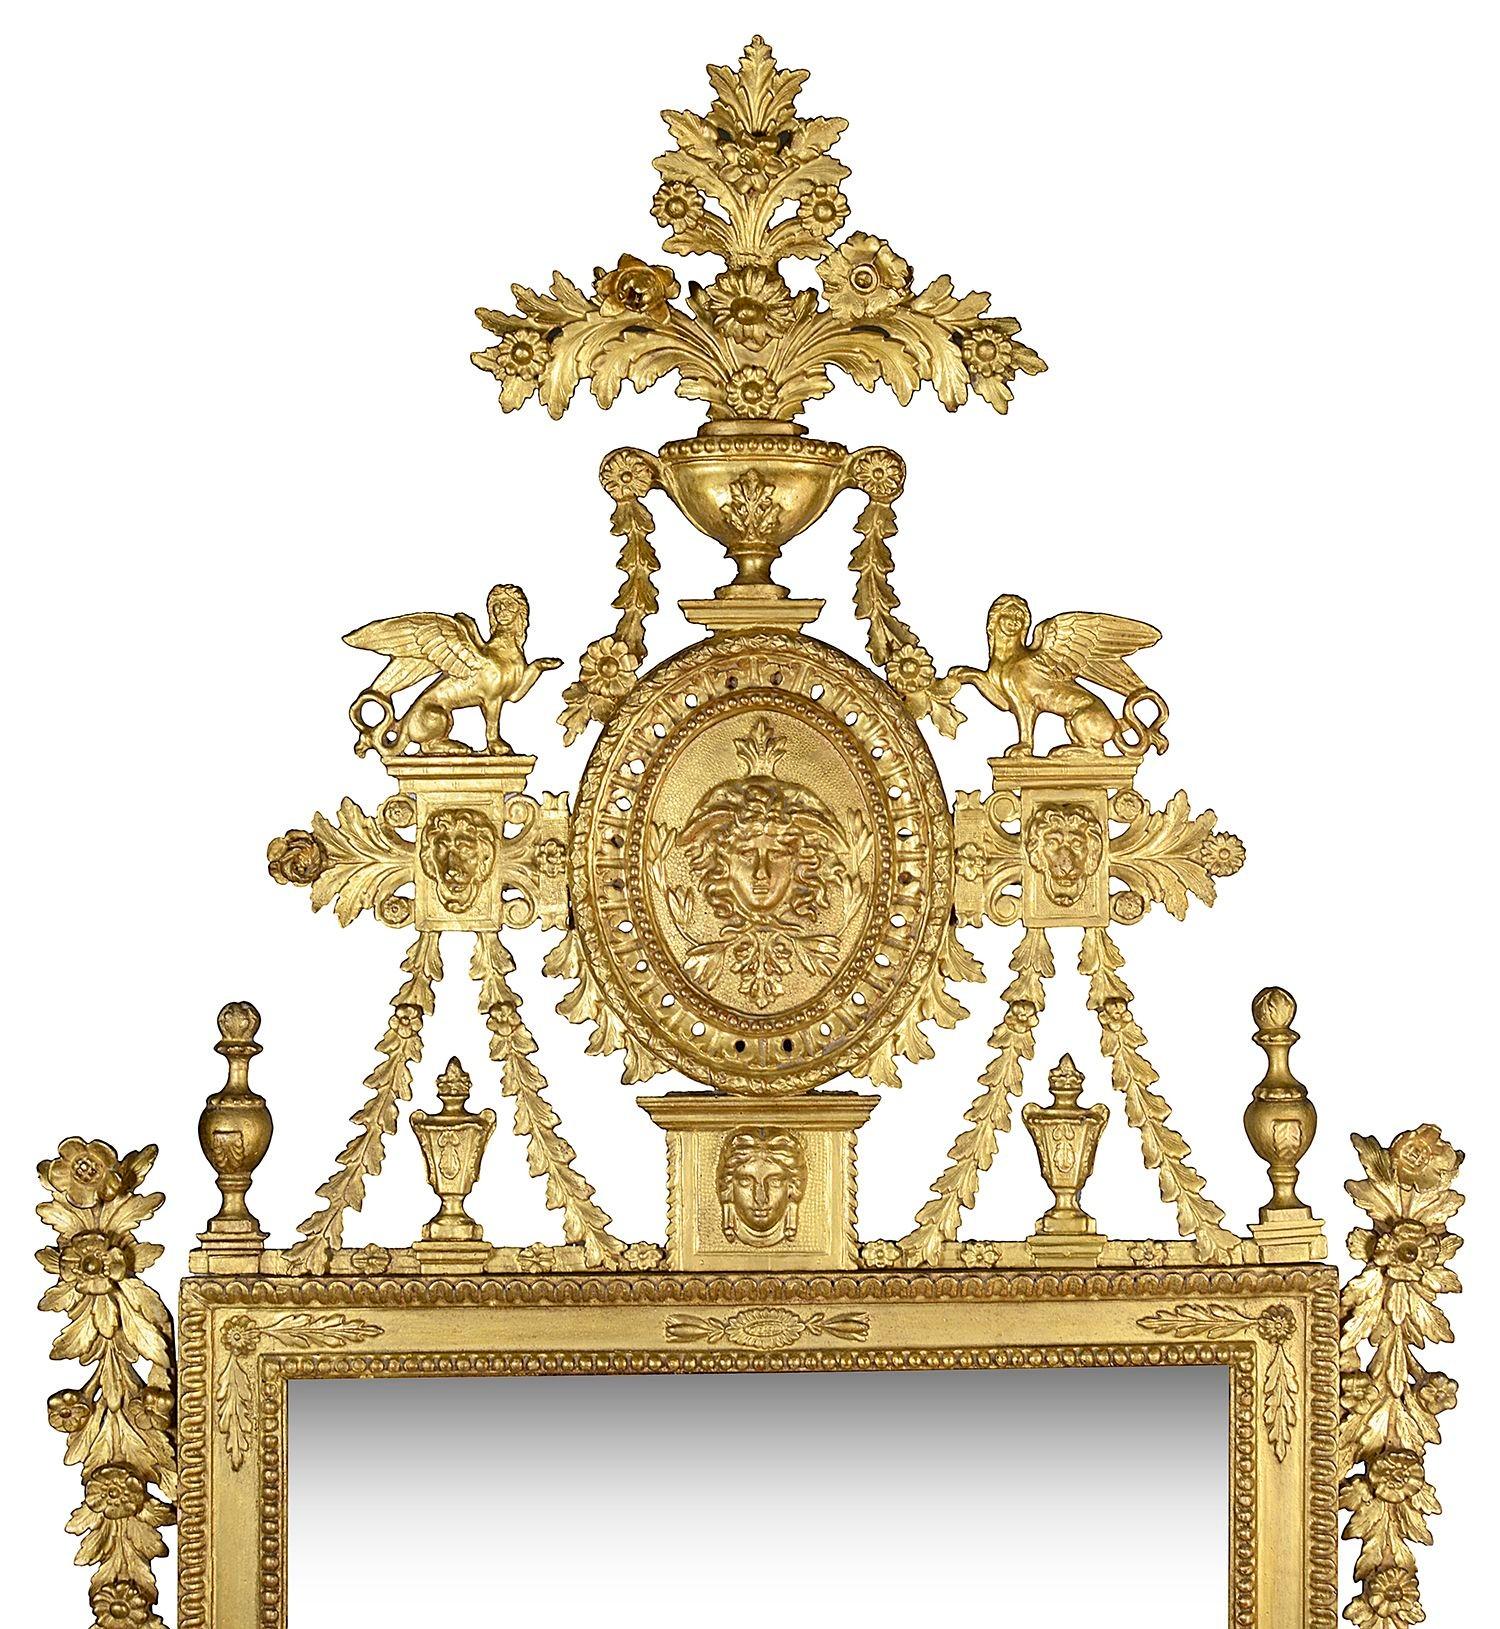 Eine sehr gute Qualität 18. Jahrhundert Italienisch geschnitztem vergoldetem Holz Neo klassischen Pier Glasspiegel, mit scrolling Blatt- und Blumendekoration, geflügelte Sphinx, Medusa und Löwe Maske montiert, eine vergoldete Perlen Rahmen